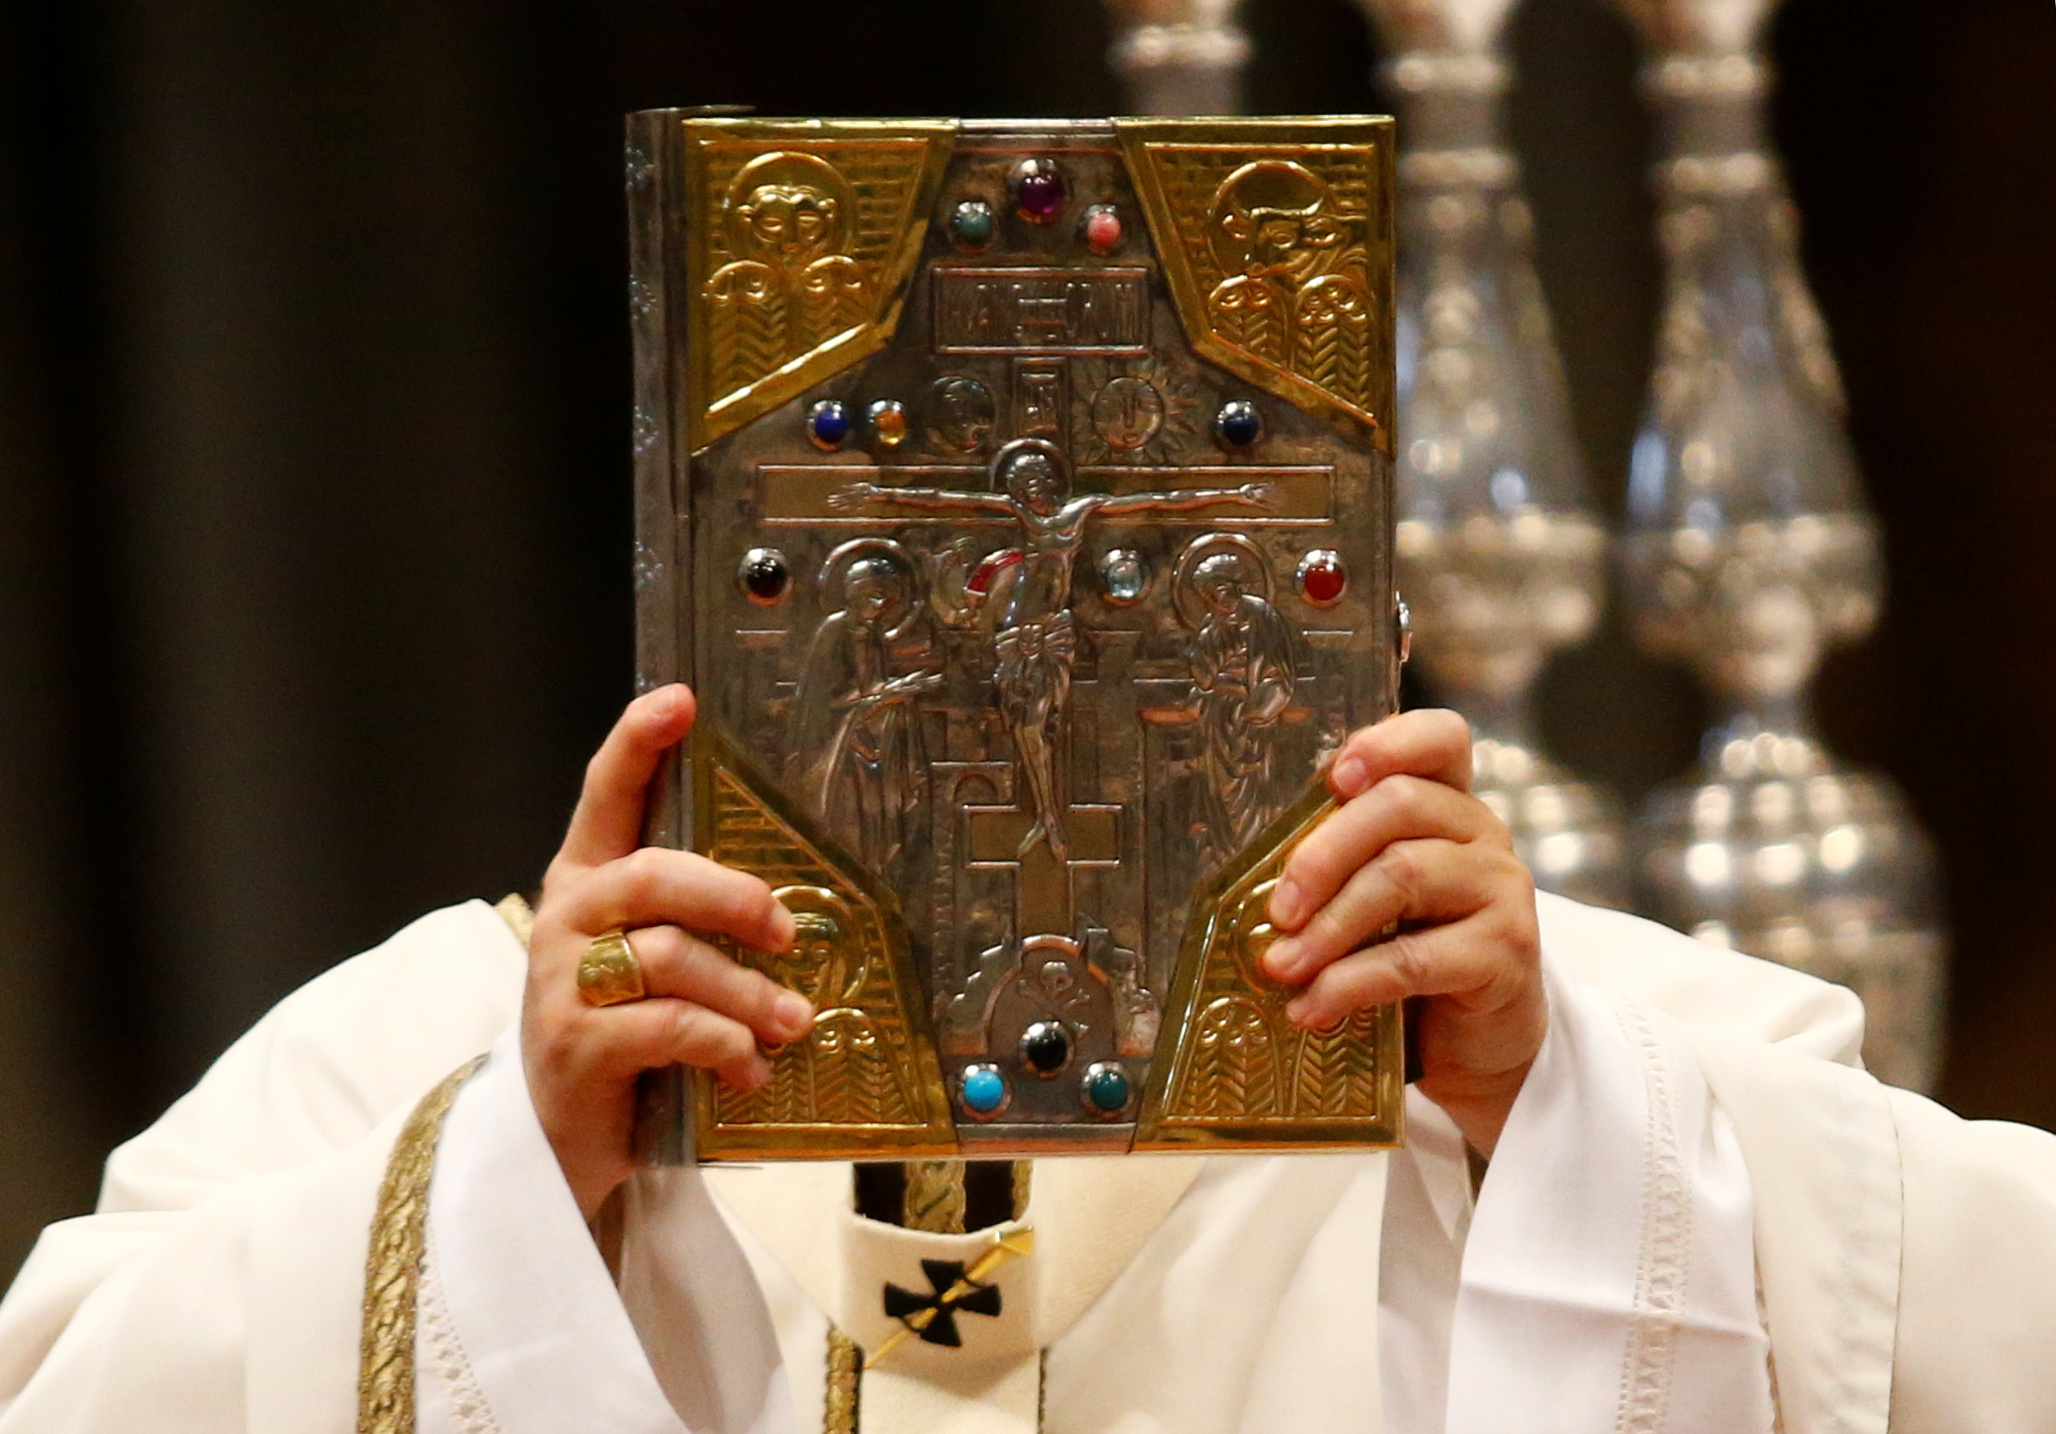 البابا فرانسيس فى يده الكتاب المقدس